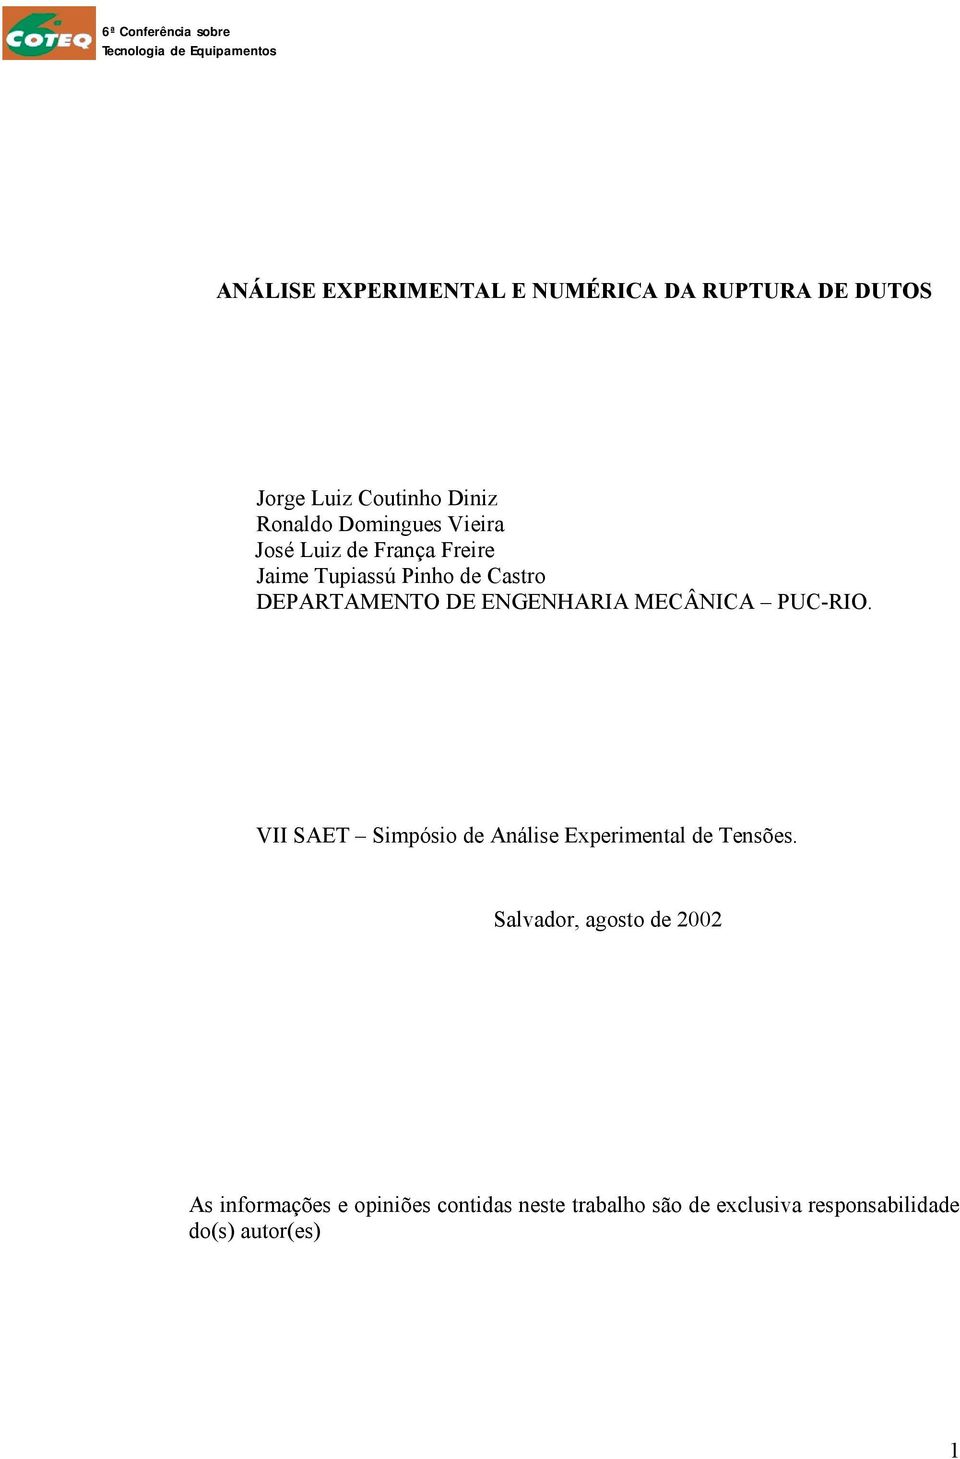 MECÂNICA PUC-RIO. VII SAET Simpósio de Análise Experimental de Tensões.